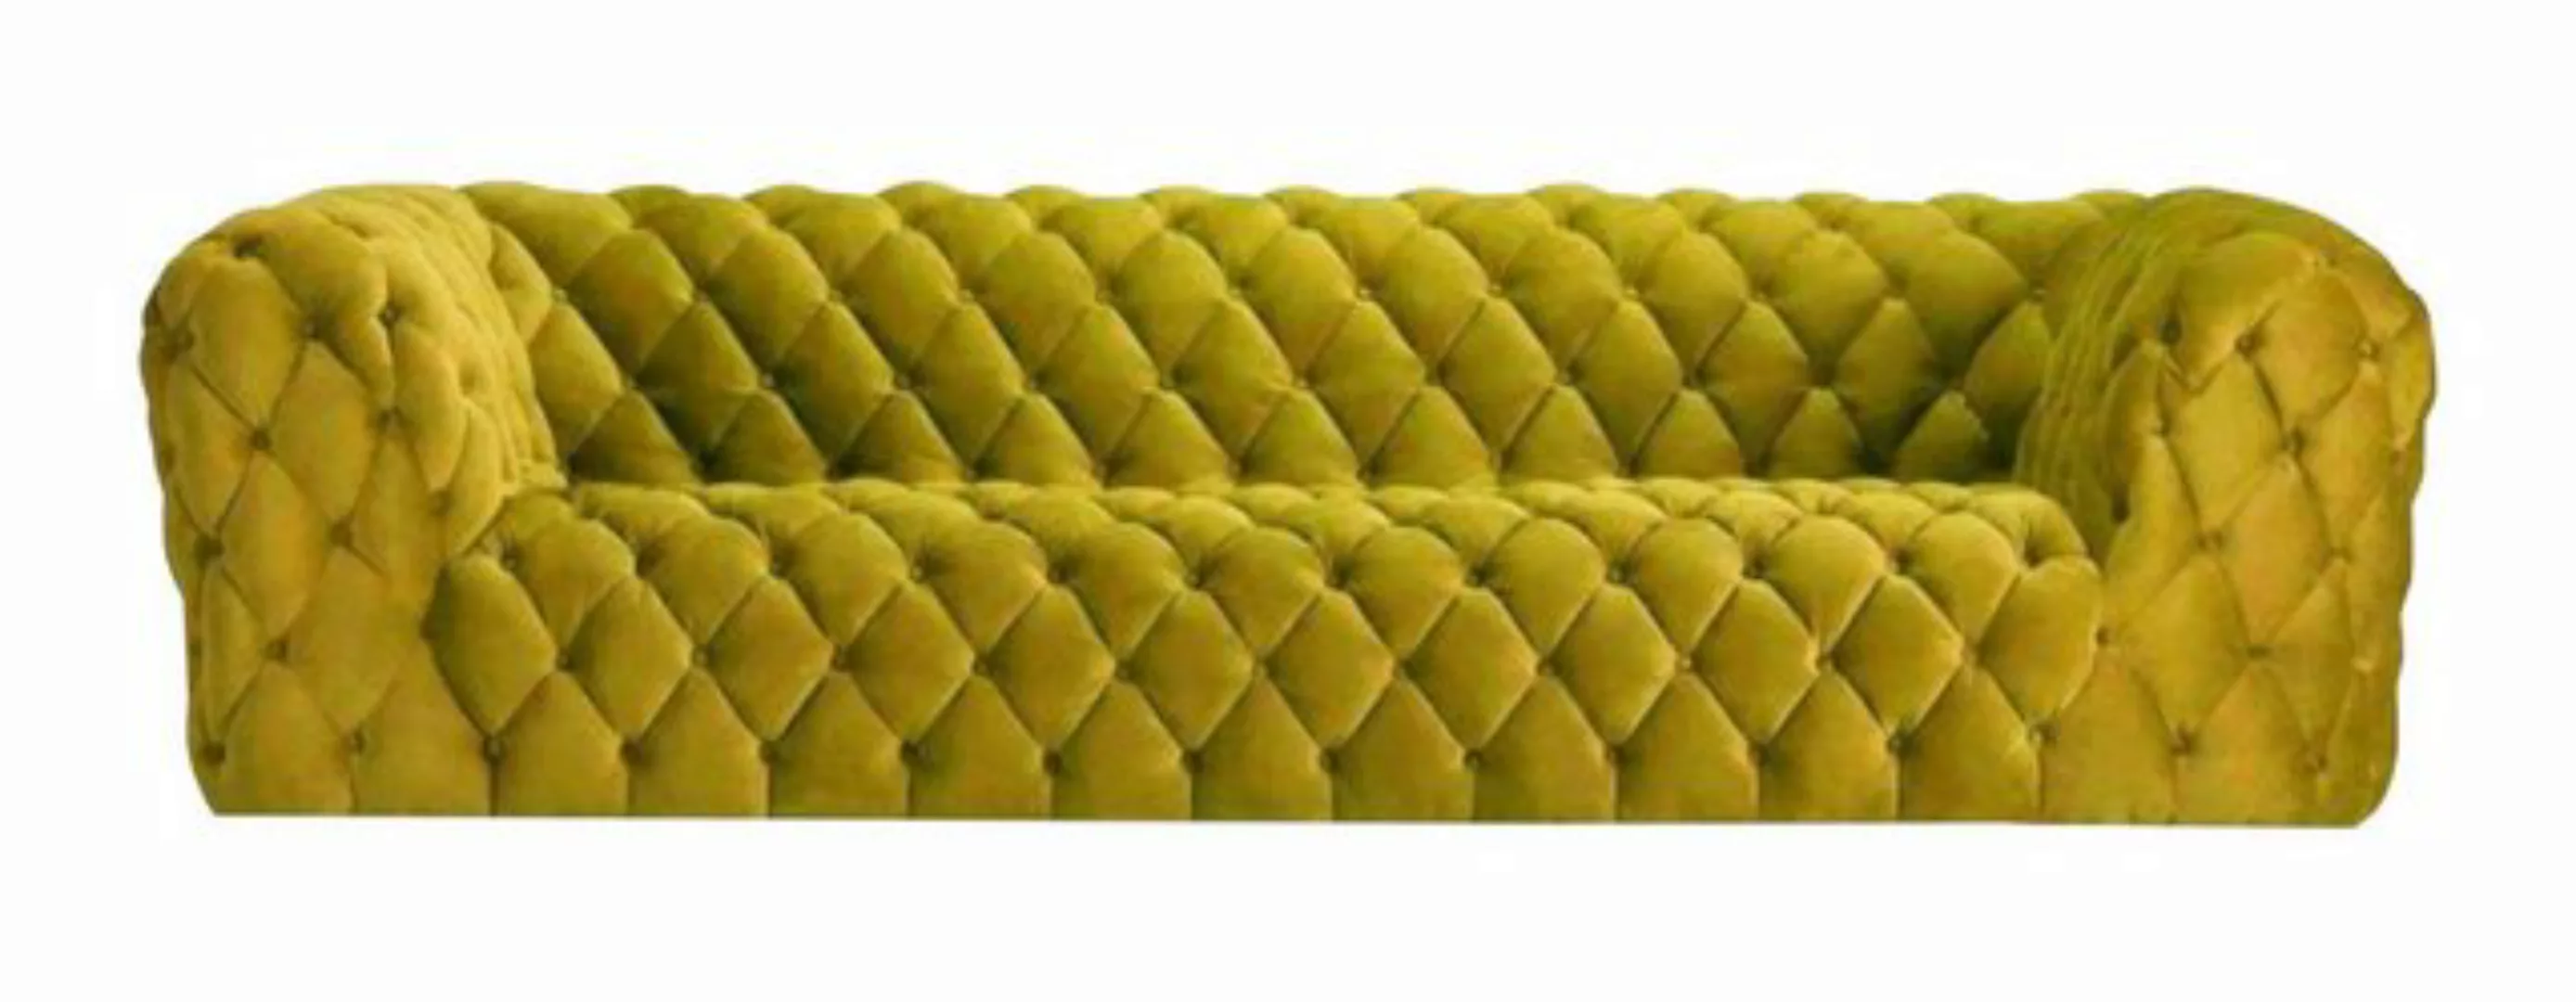 JVmoebel Sofa, Pinke xxl big couch chesterfield sofa polster stoff couchen günstig online kaufen